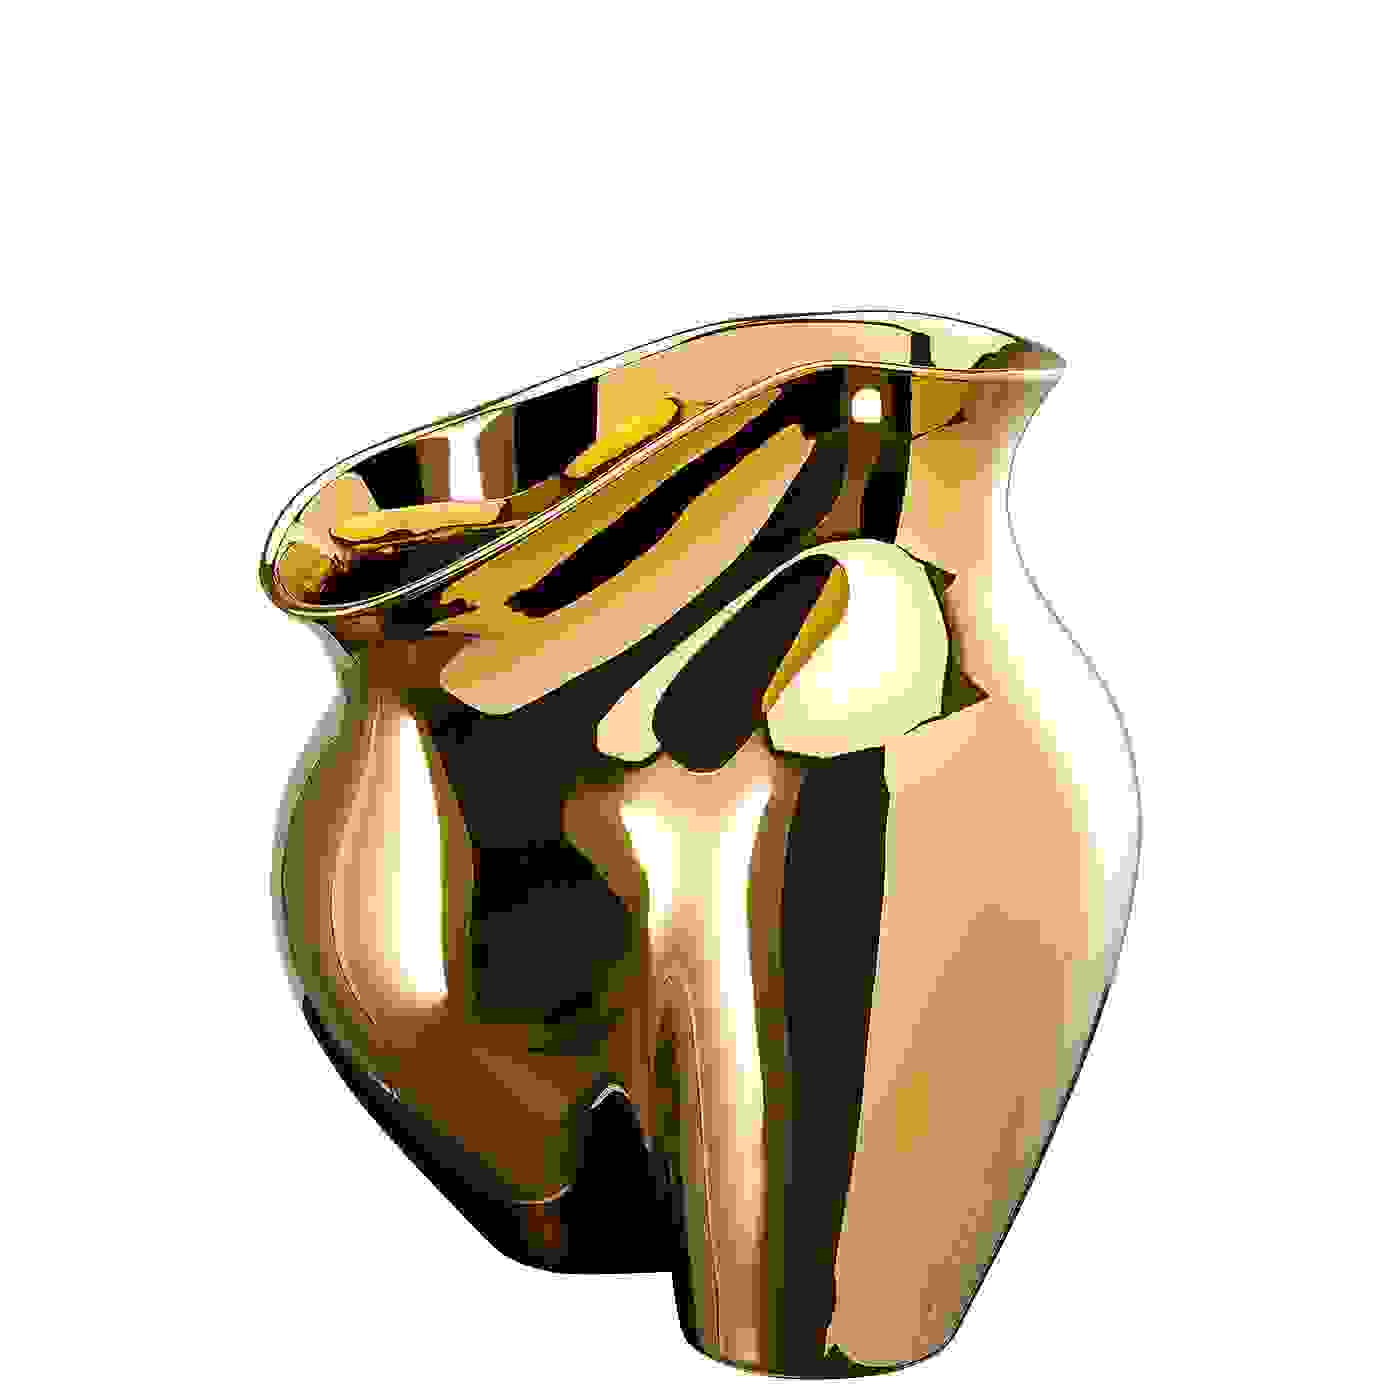 Rosenthal La Chute Gold Titanisiert Vase 26 cm 4012434706393